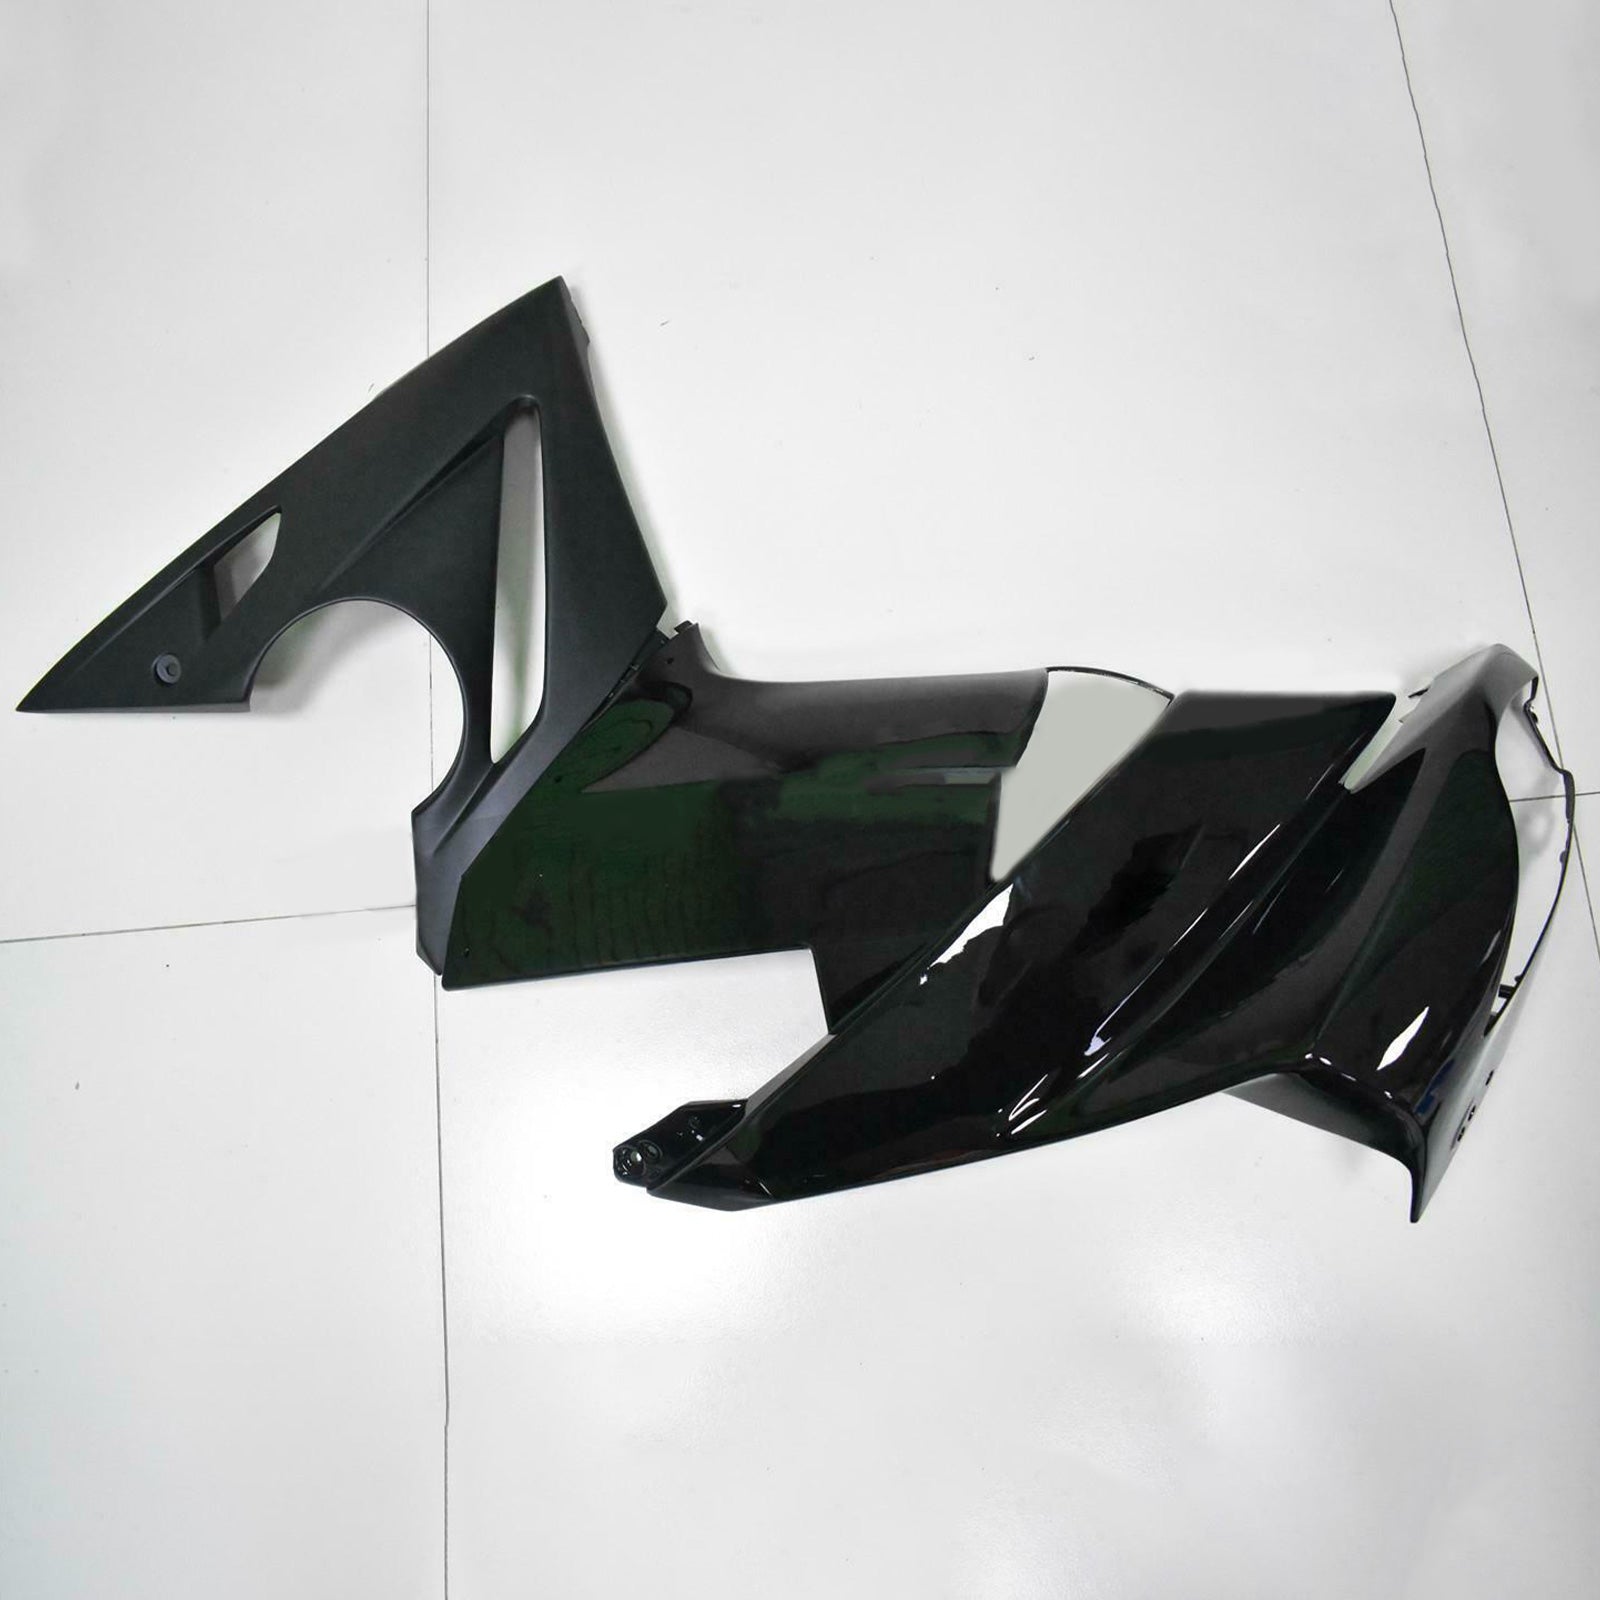 Amotopart Kit de carenado de plástico para Kawasaki Ninja 650 ER-6F EX650 2009-2011 01 # Genérico